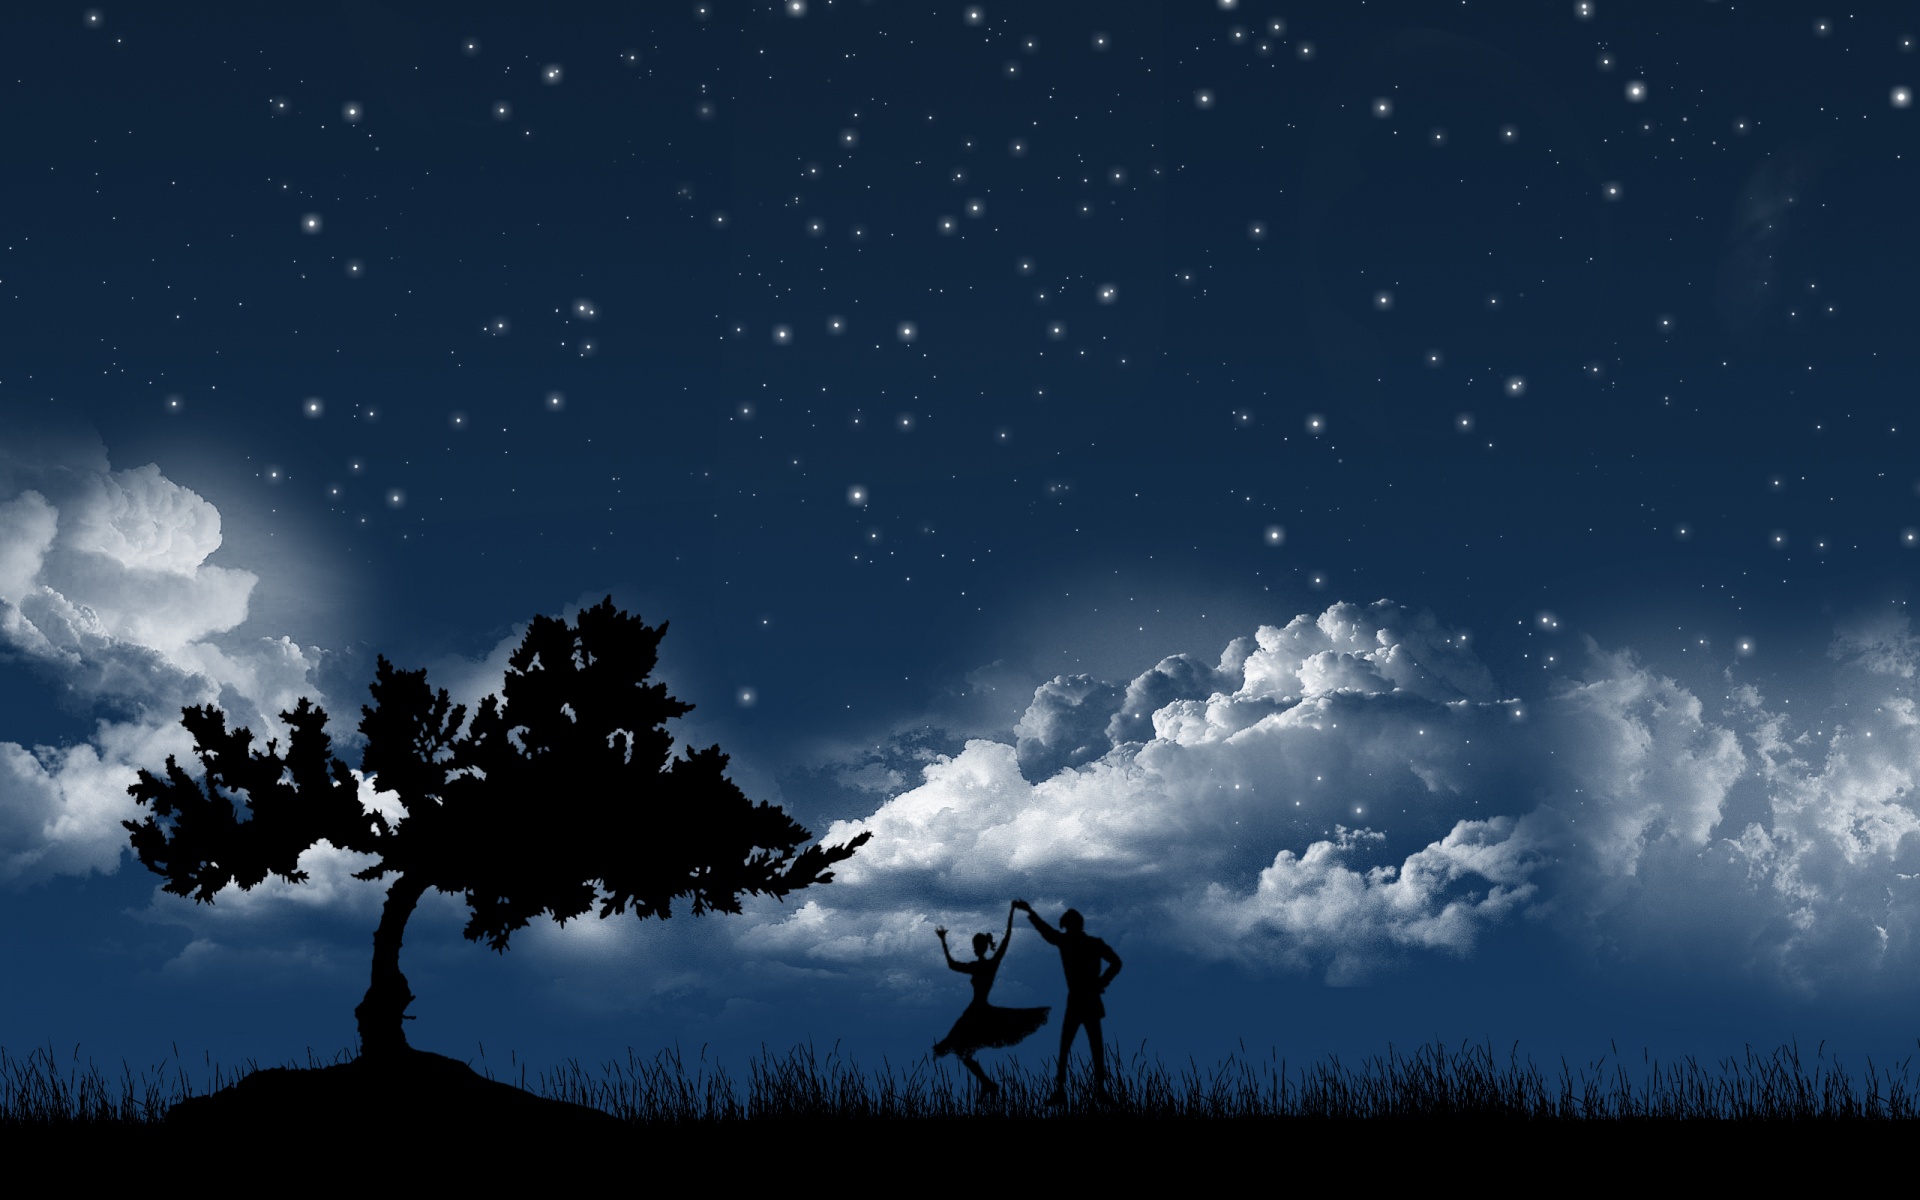 Скачать обои бесплатно Звезды, Ночь, Облака, Любовь, Танцы, Силуэт, Пара, Дерево, Звездное Небо, Синий, Художественные картинка на рабочий стол ПК